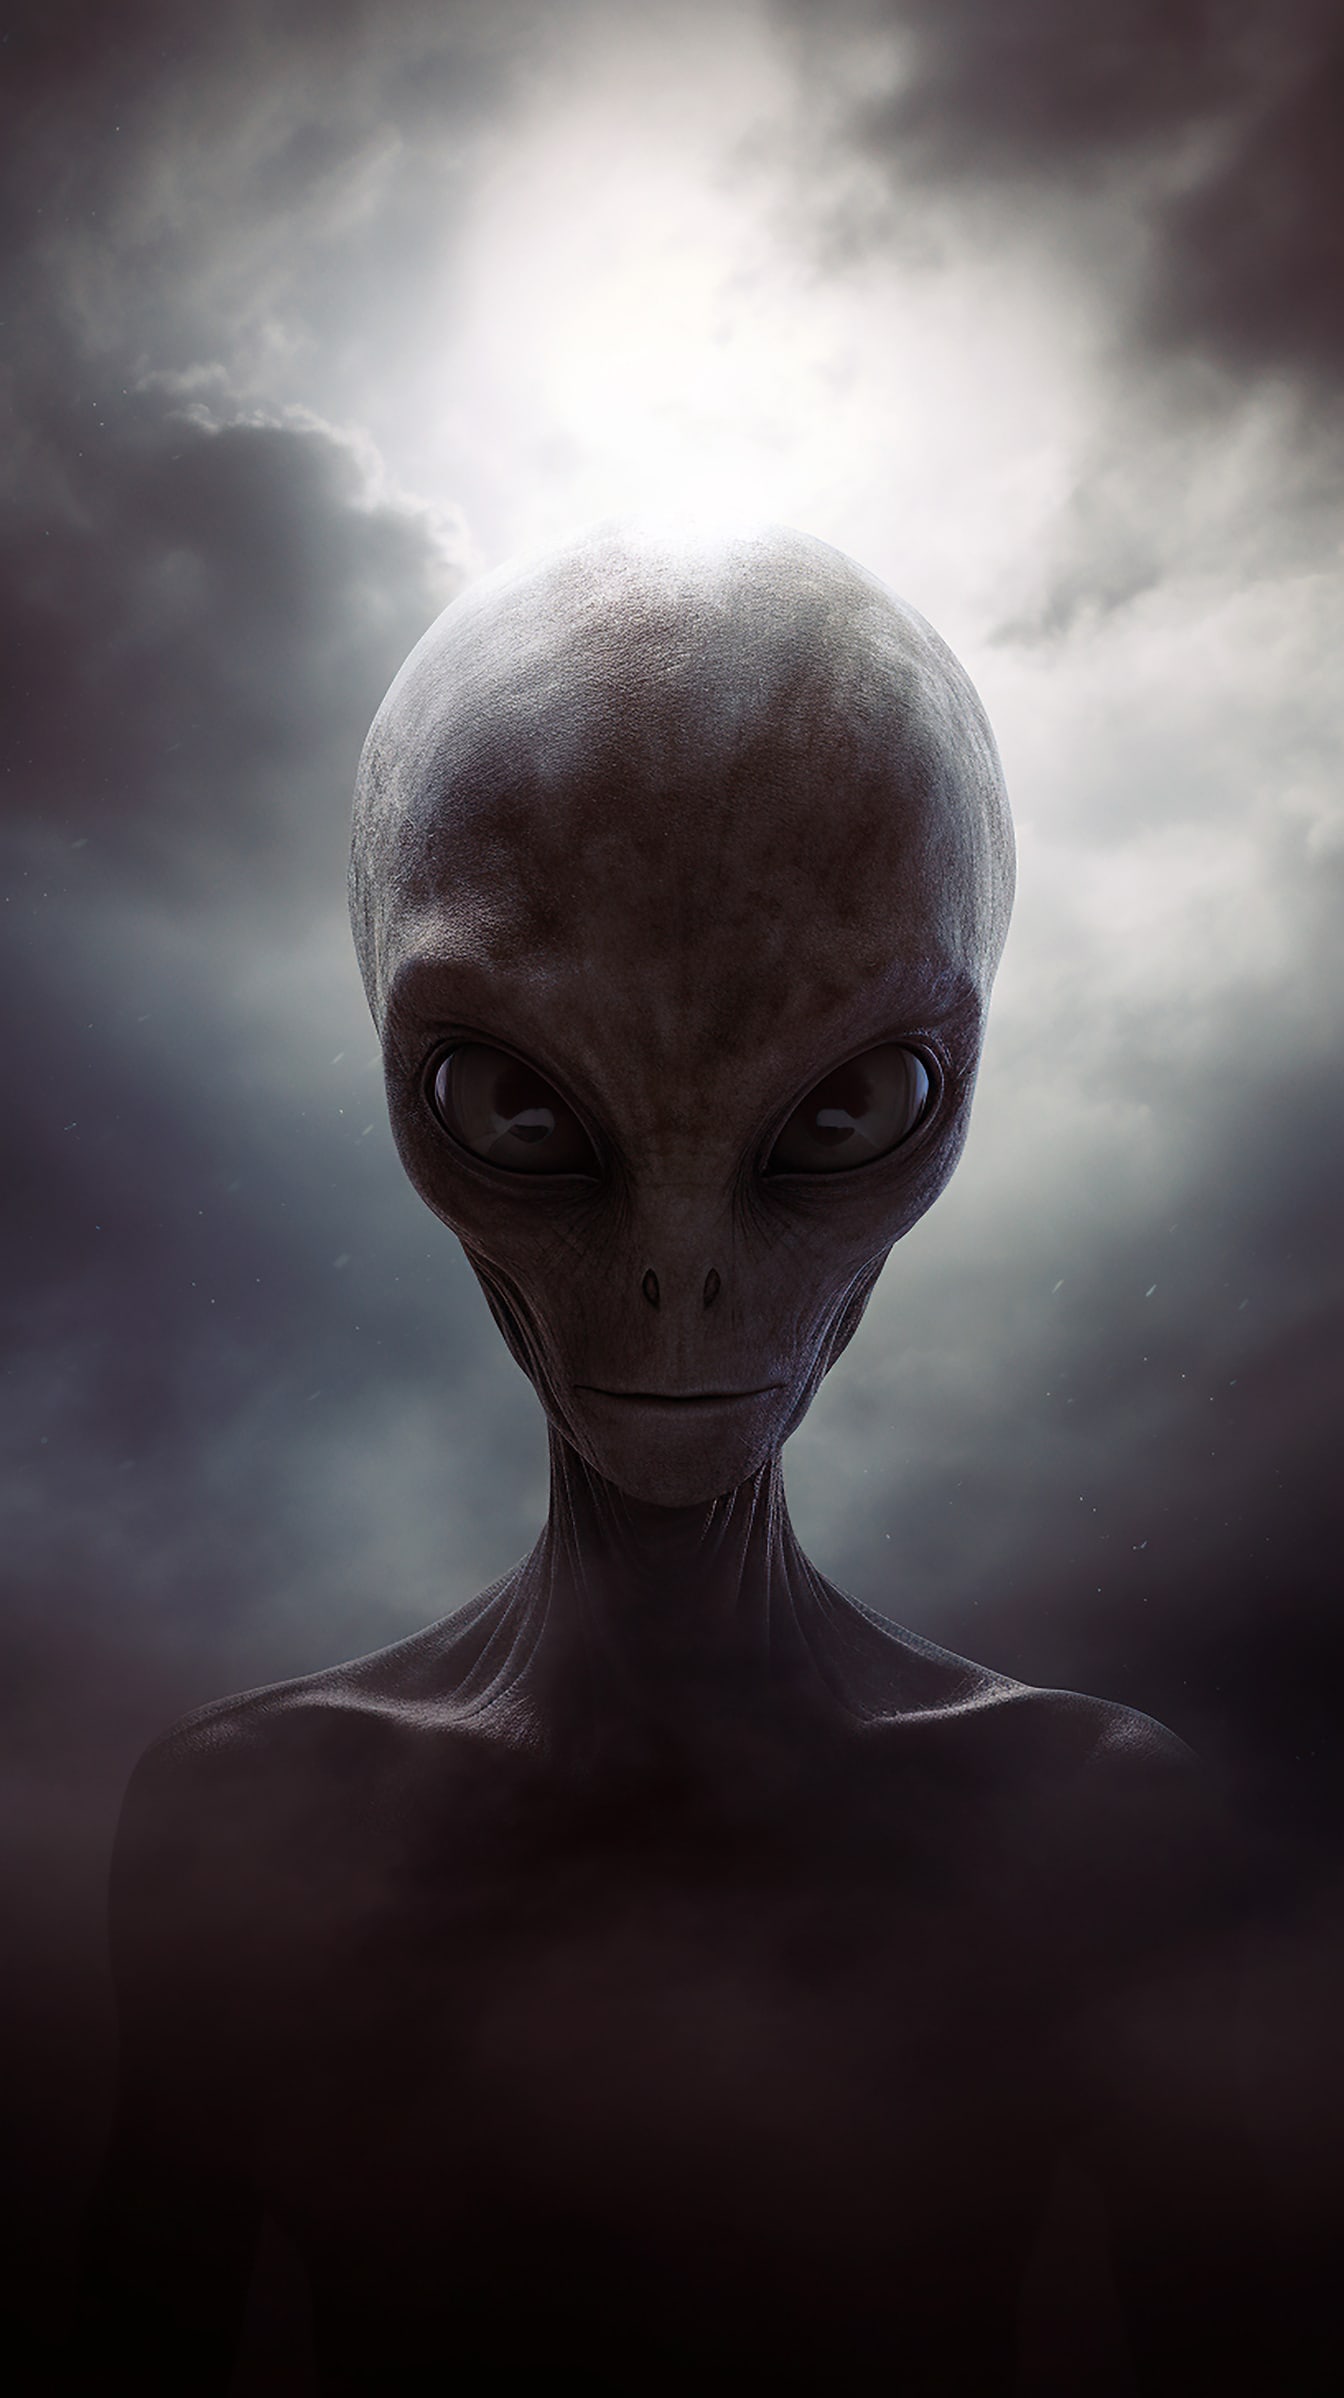 Portret de creatură extraterestră umanoidă cu piele și ochi gri